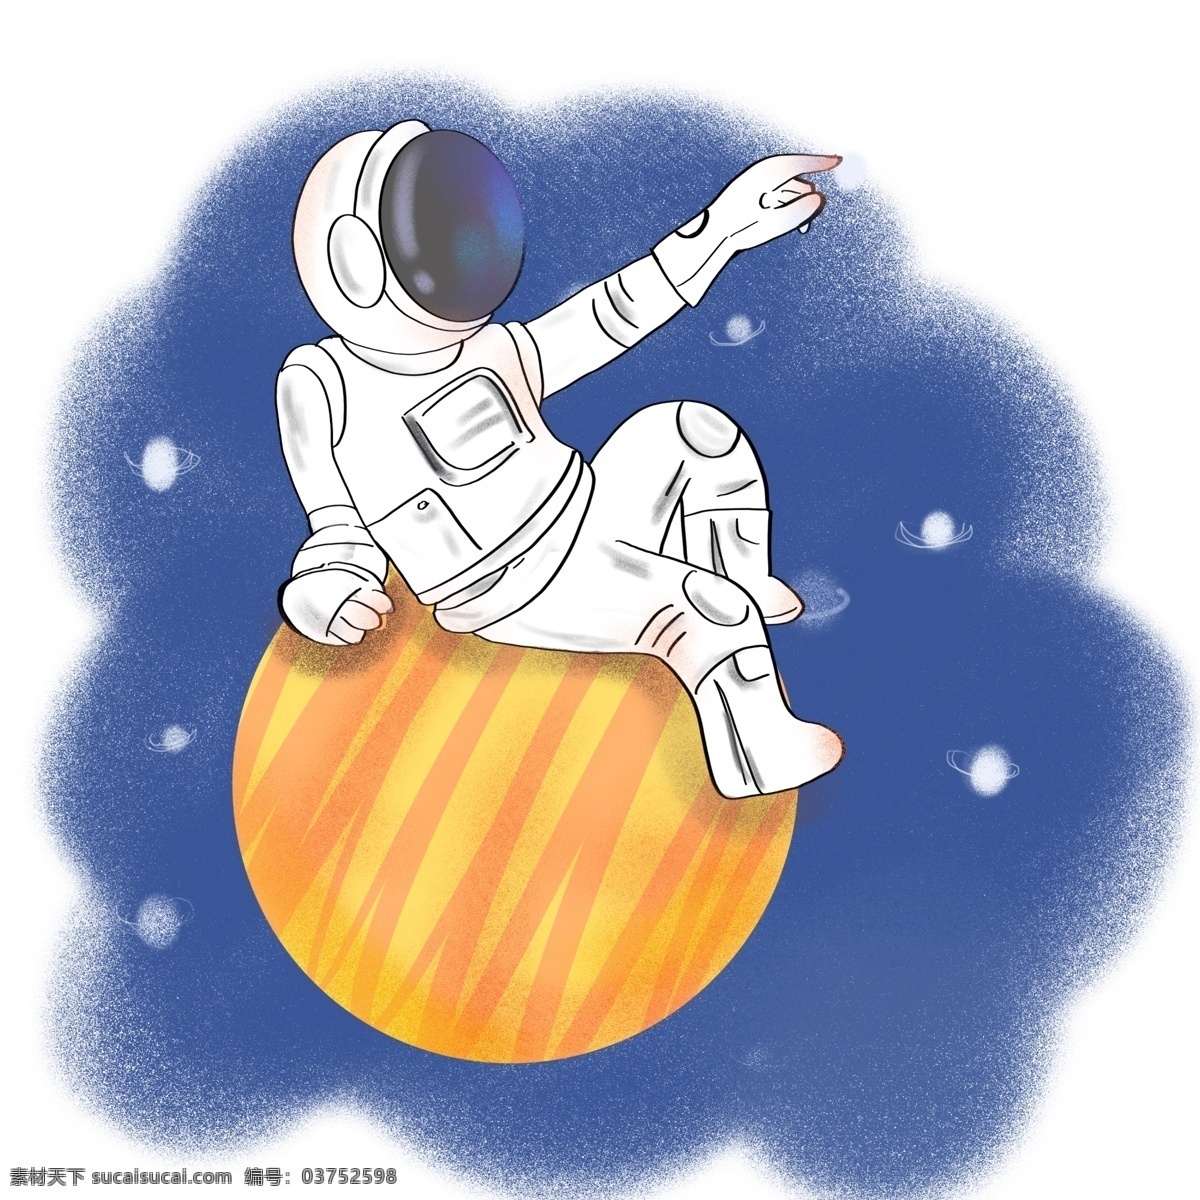 宇航员 太空 月亮 卡通 元素 太空宇航员 卡通宇航员 星球 白色宇航员 卡通插画 噪点插画